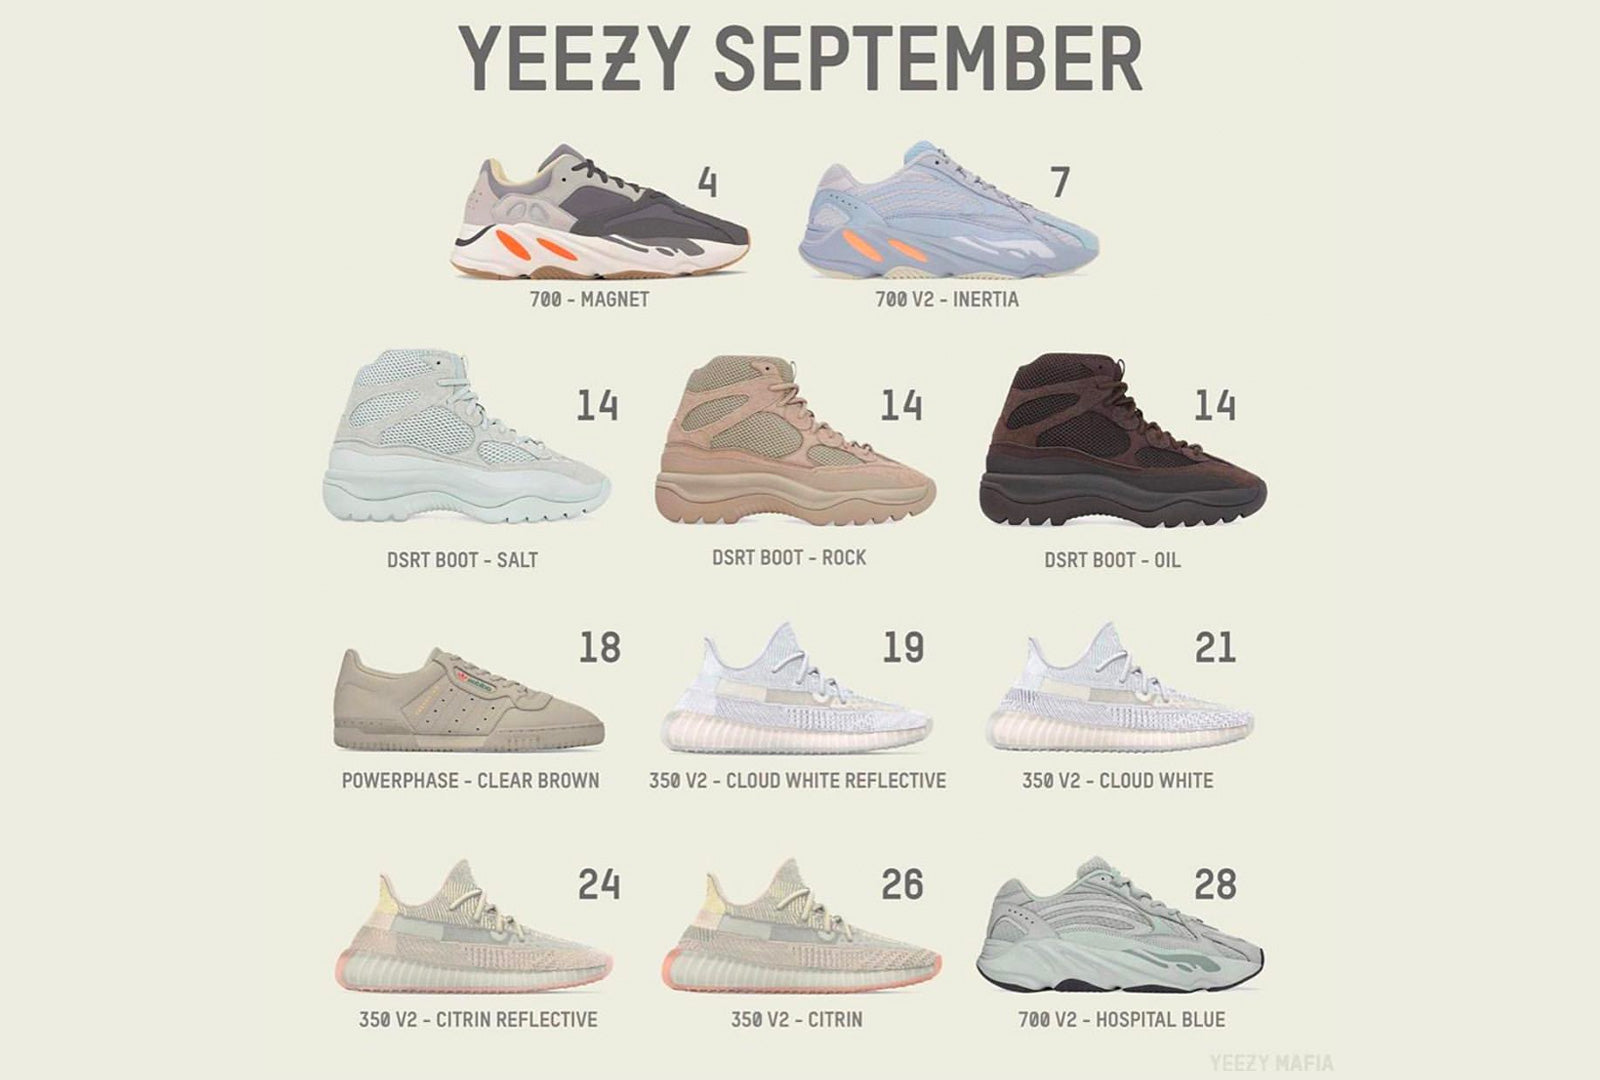 Yeezy Release Calendar September 2019 - Sneakers